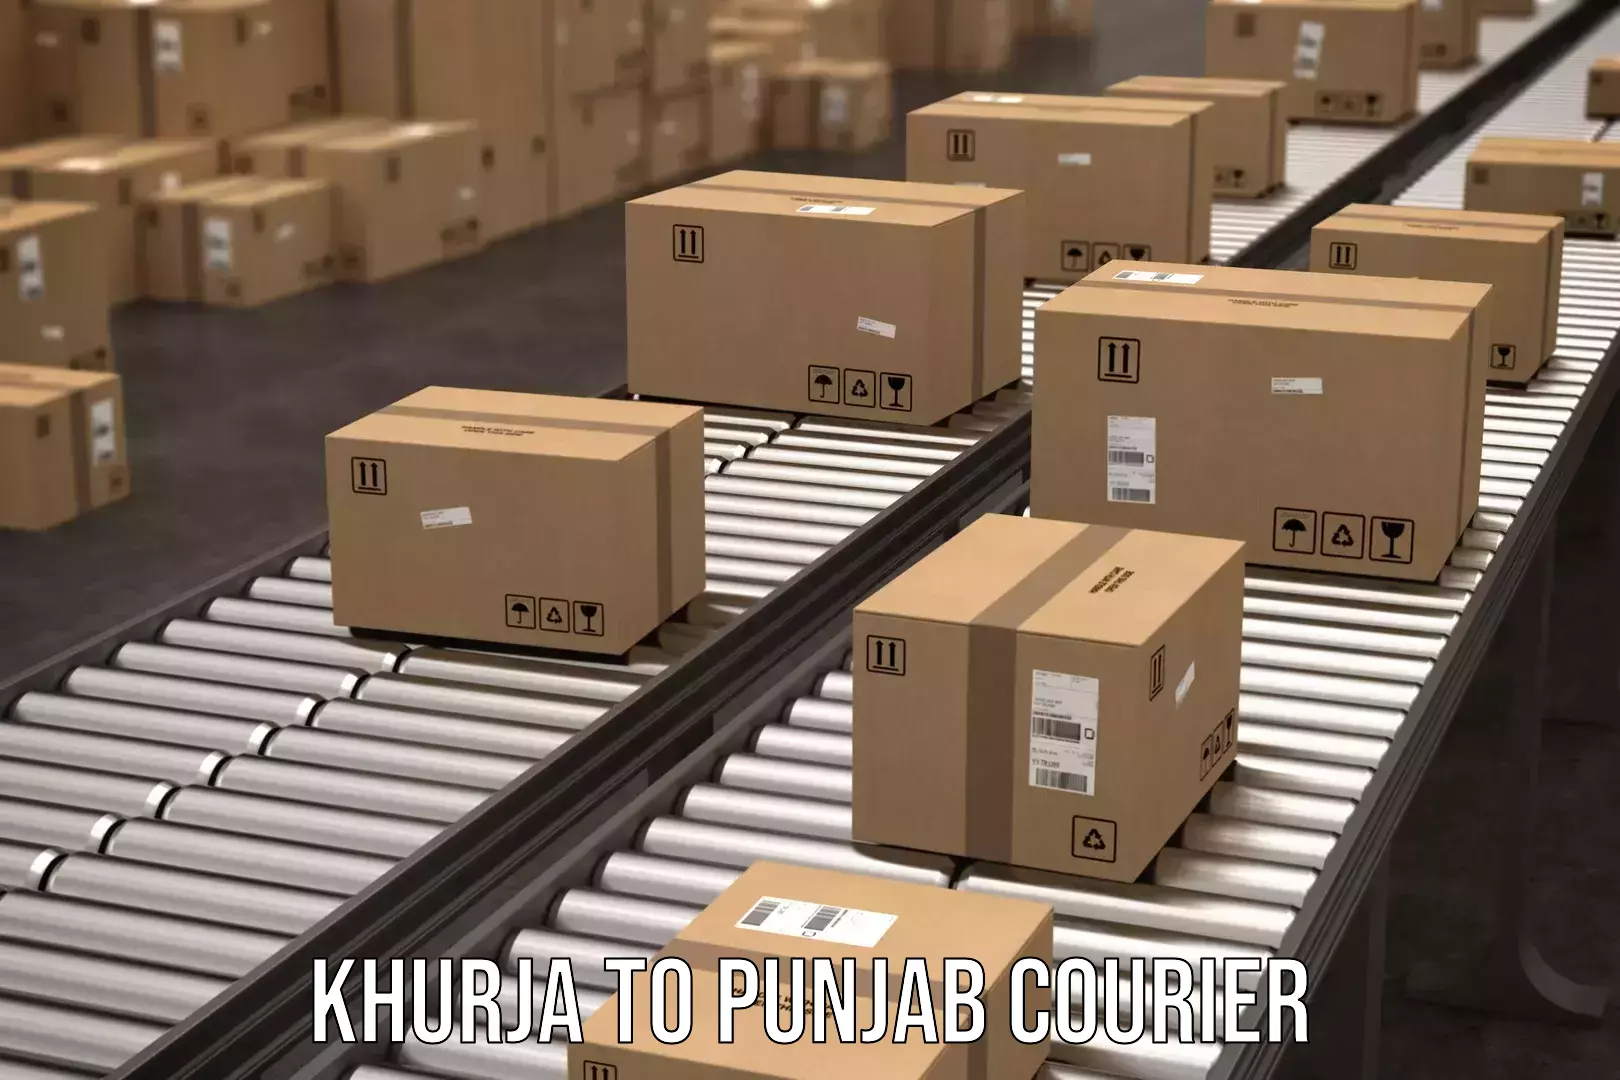 Door-to-door freight service Khurja to Punjab